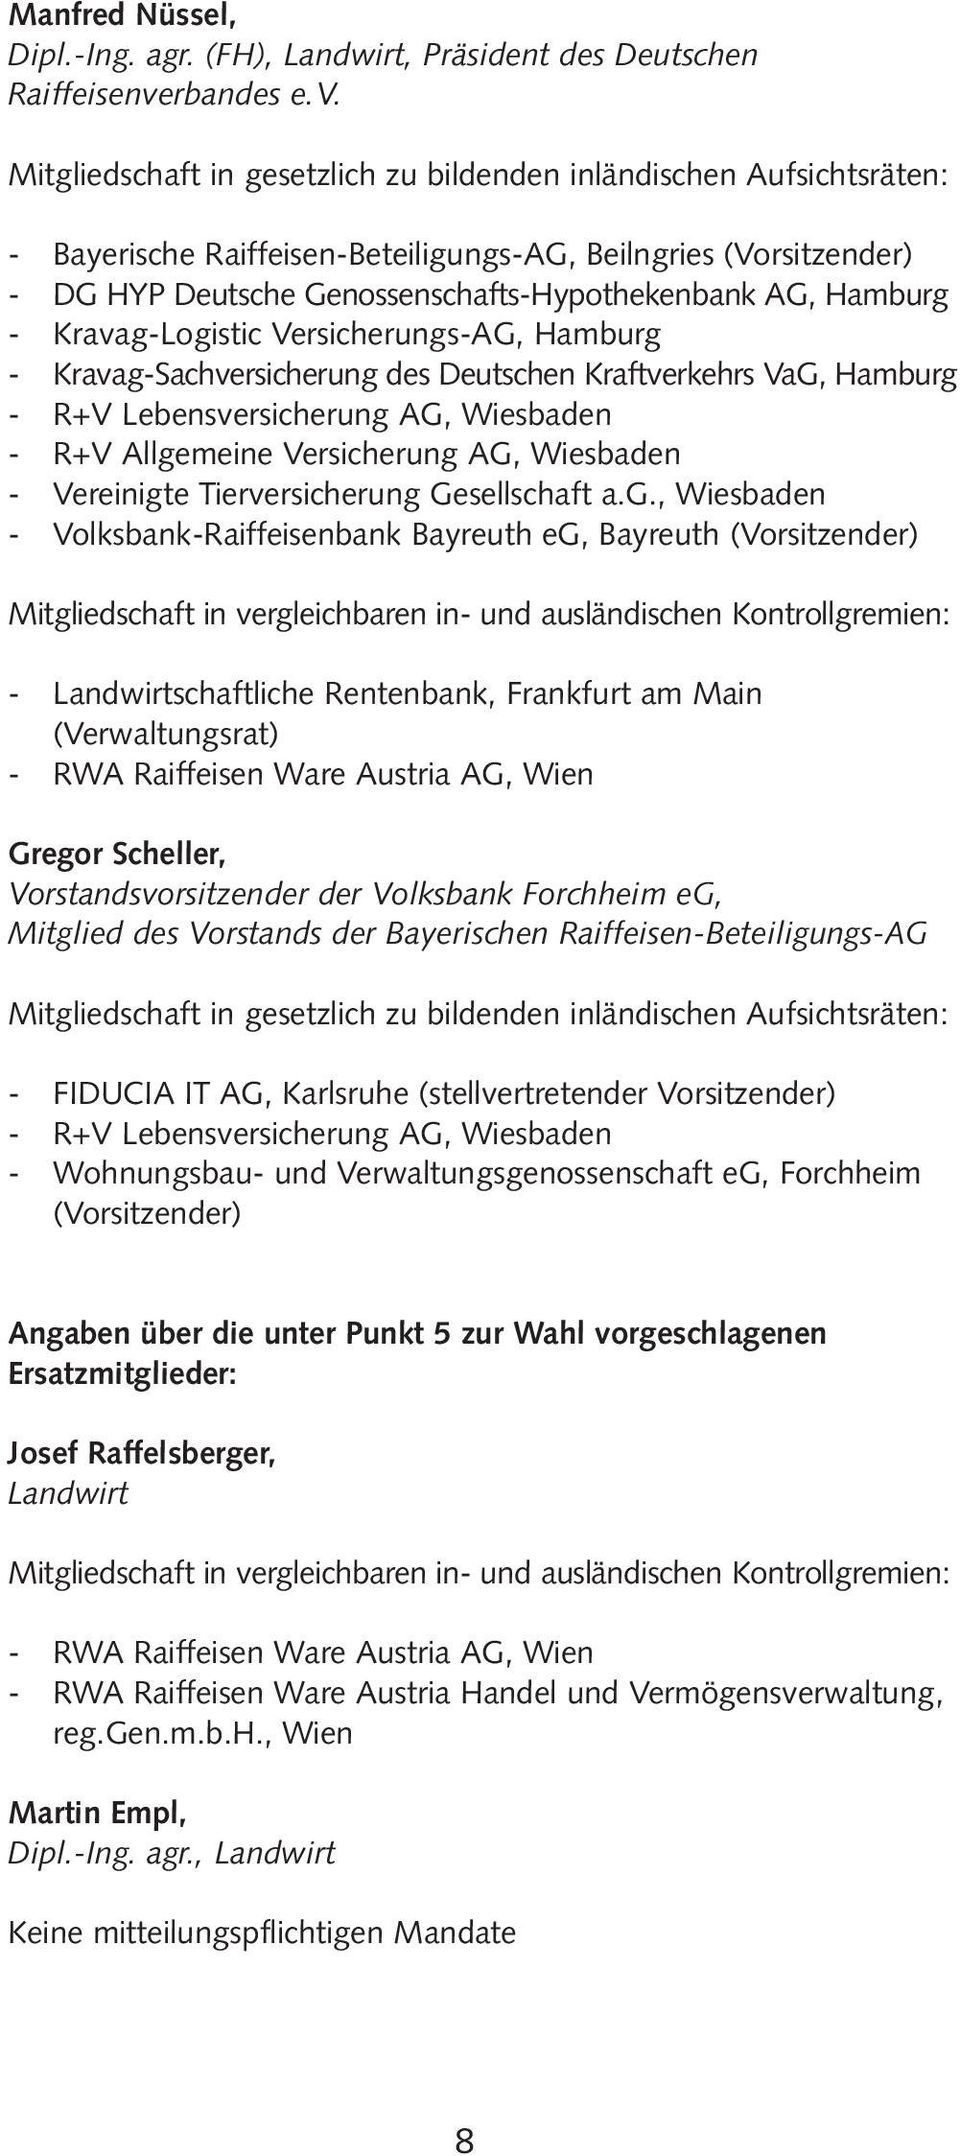 - Bayerische Raiffeisen-Beteiligungs-AG, Beilngries (Vorsitzender) - DG HYP Deutsche Genossenschafts-Hypothekenbank AG, Hamburg - Kravag-Logistic Versicherungs-AG, Hamburg - Kravag-Sachversicherung